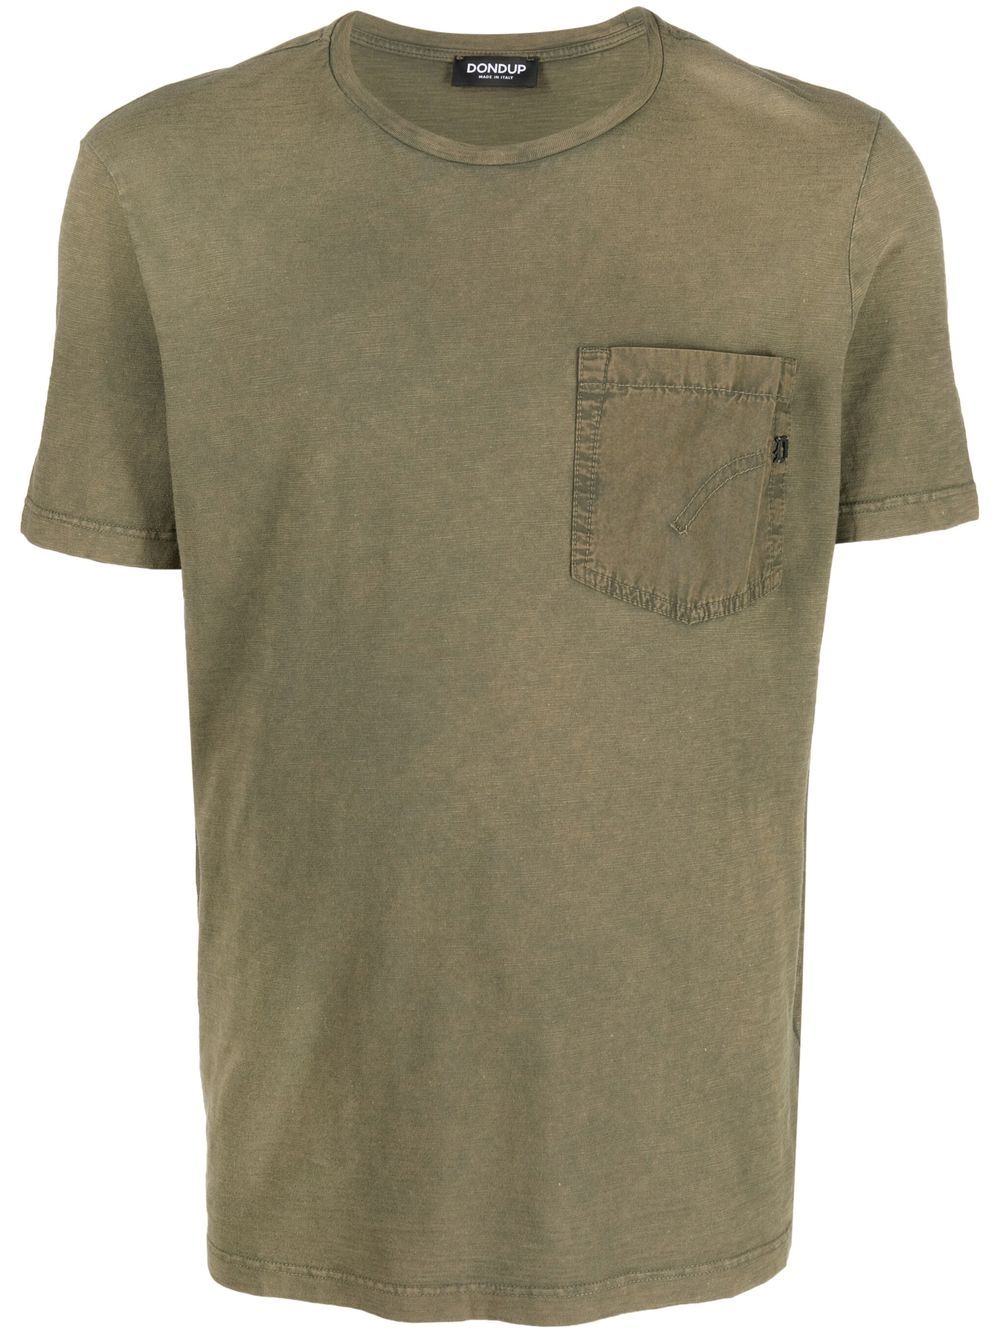 dondup t-shirt à poche poitrine - vert